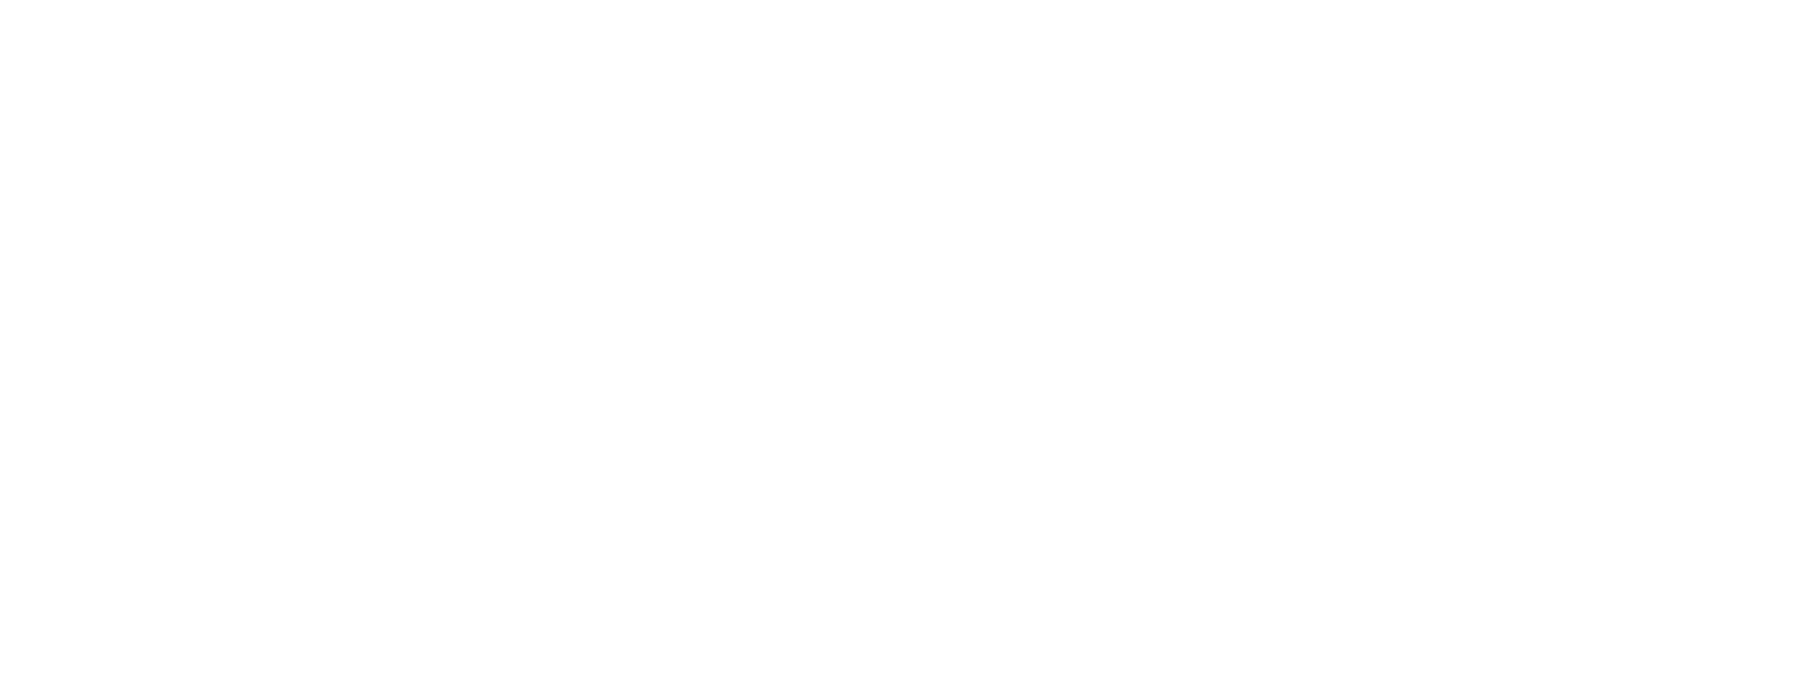 Logo Client 1 - Bouygues